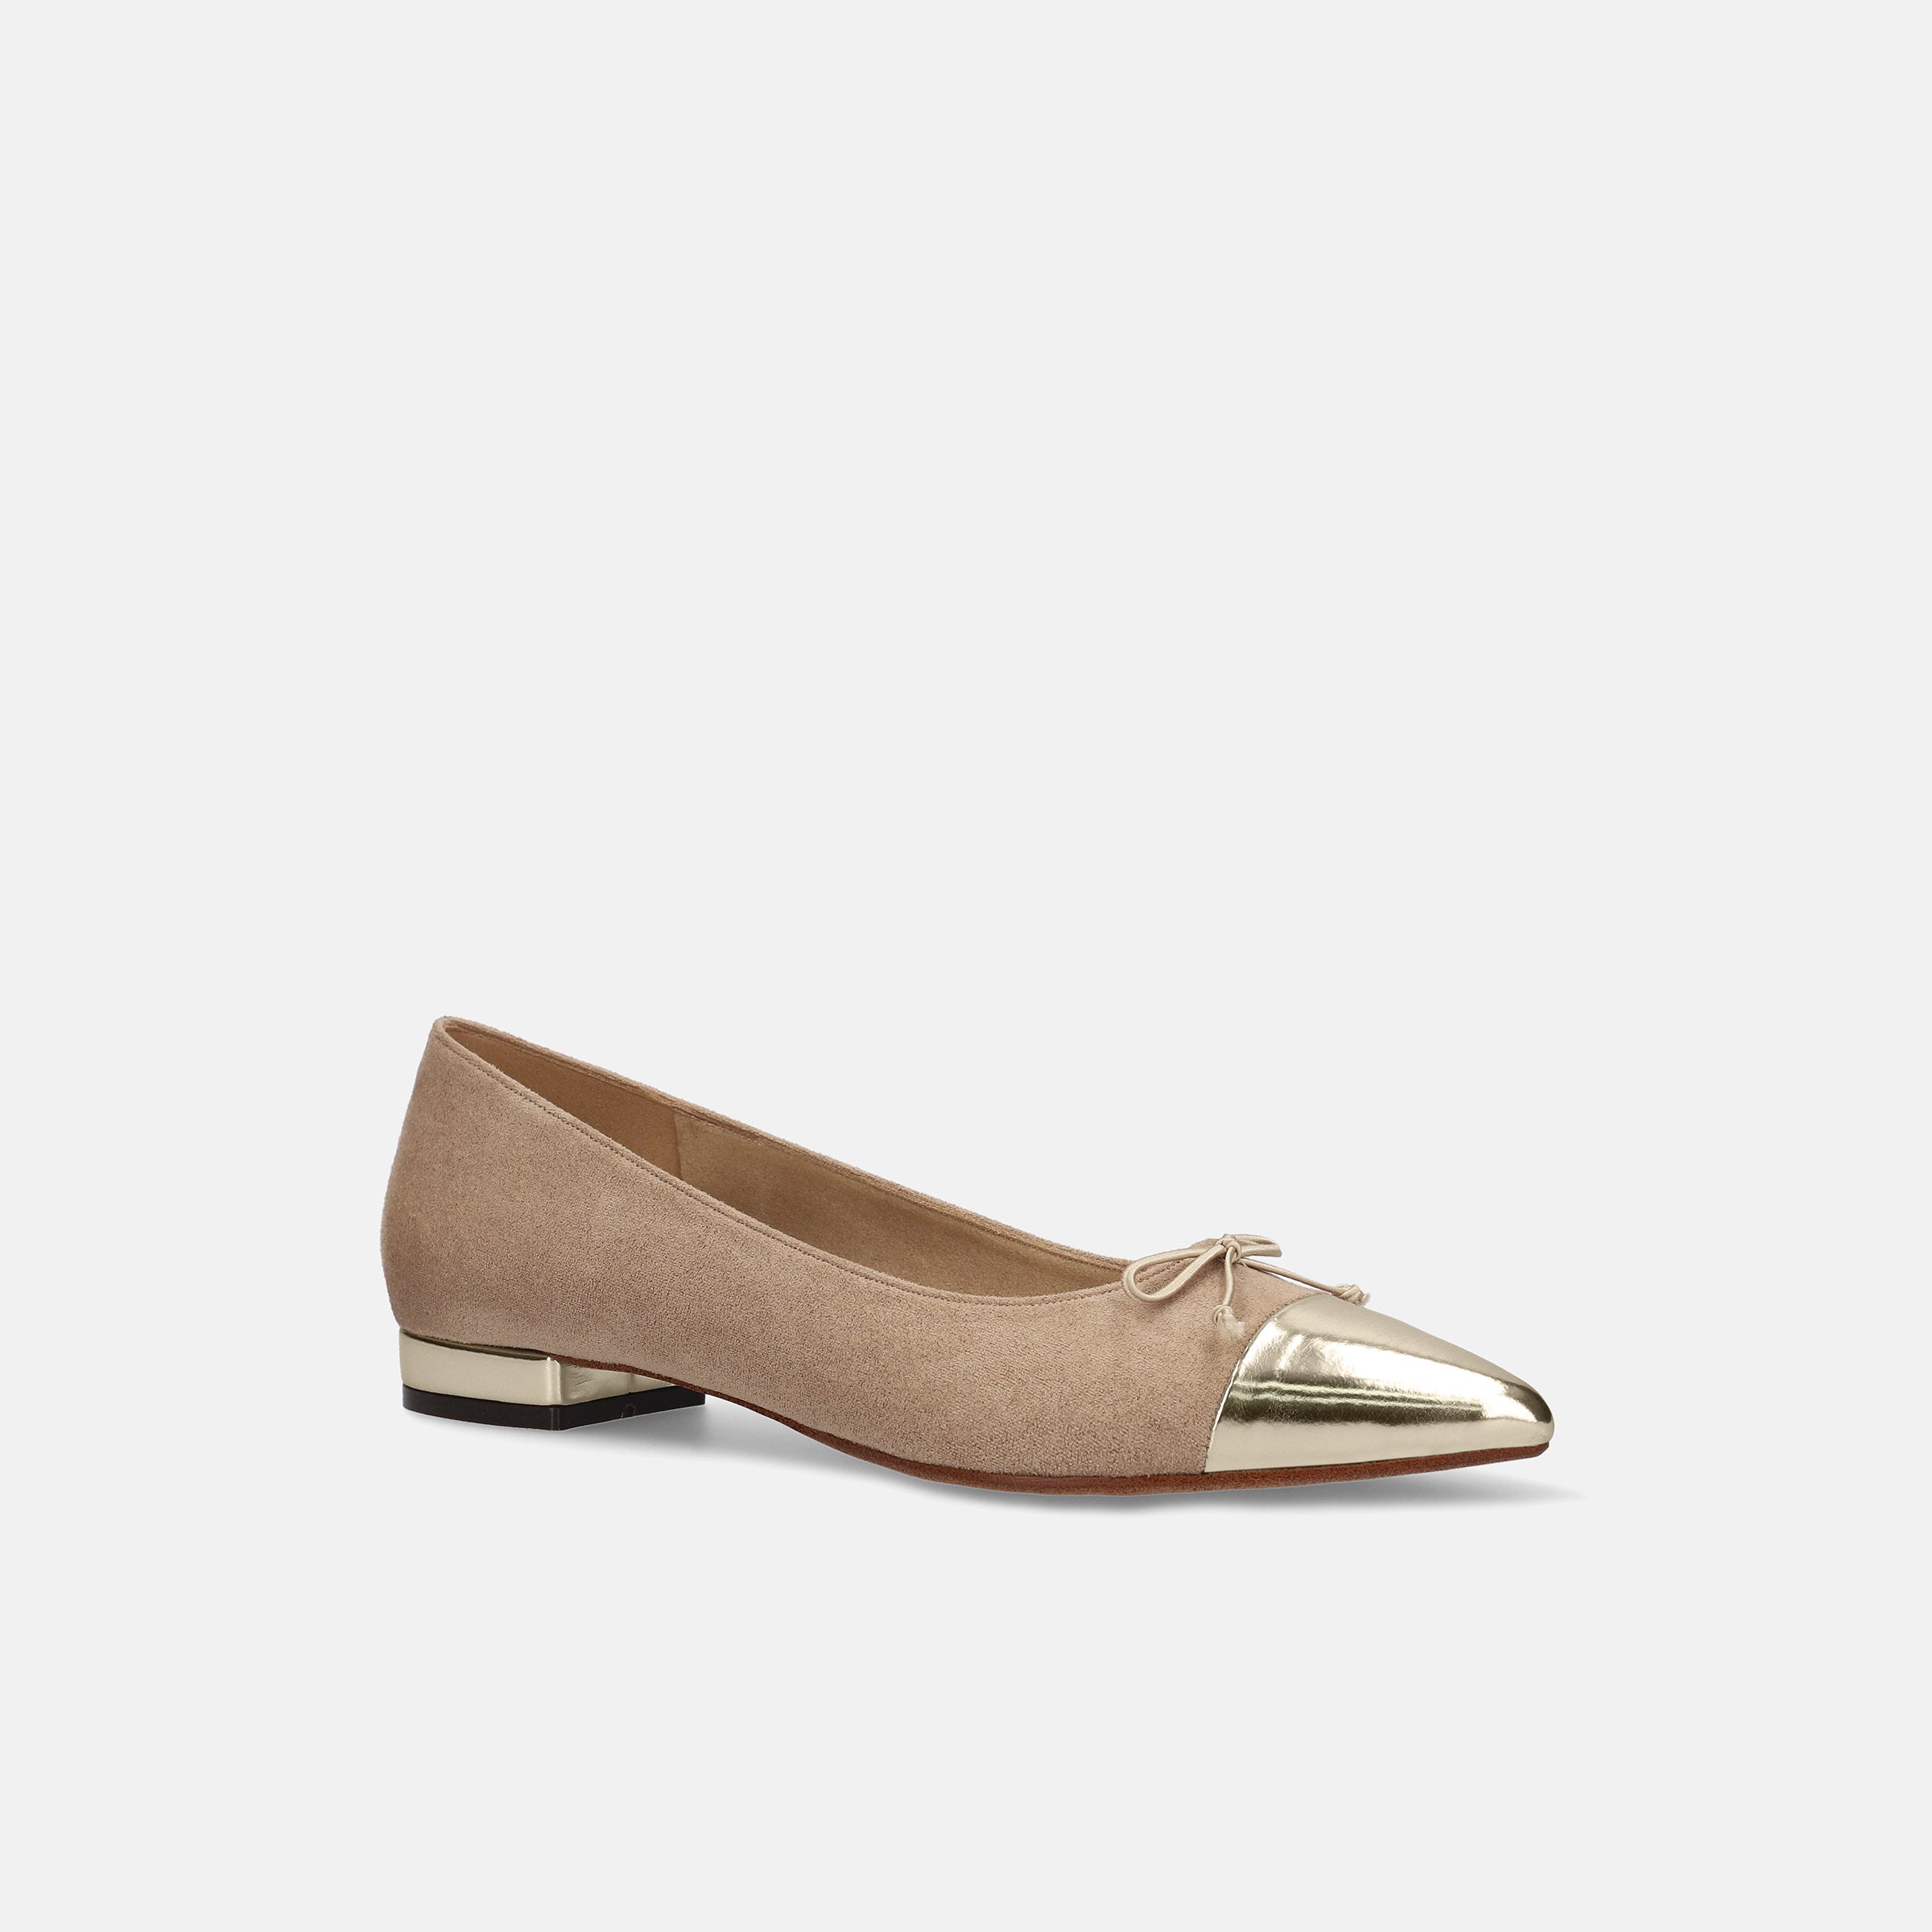 モマ (MOMA) イタリア製革靴 グレー 41.5レザー - ドレス/ビジネス